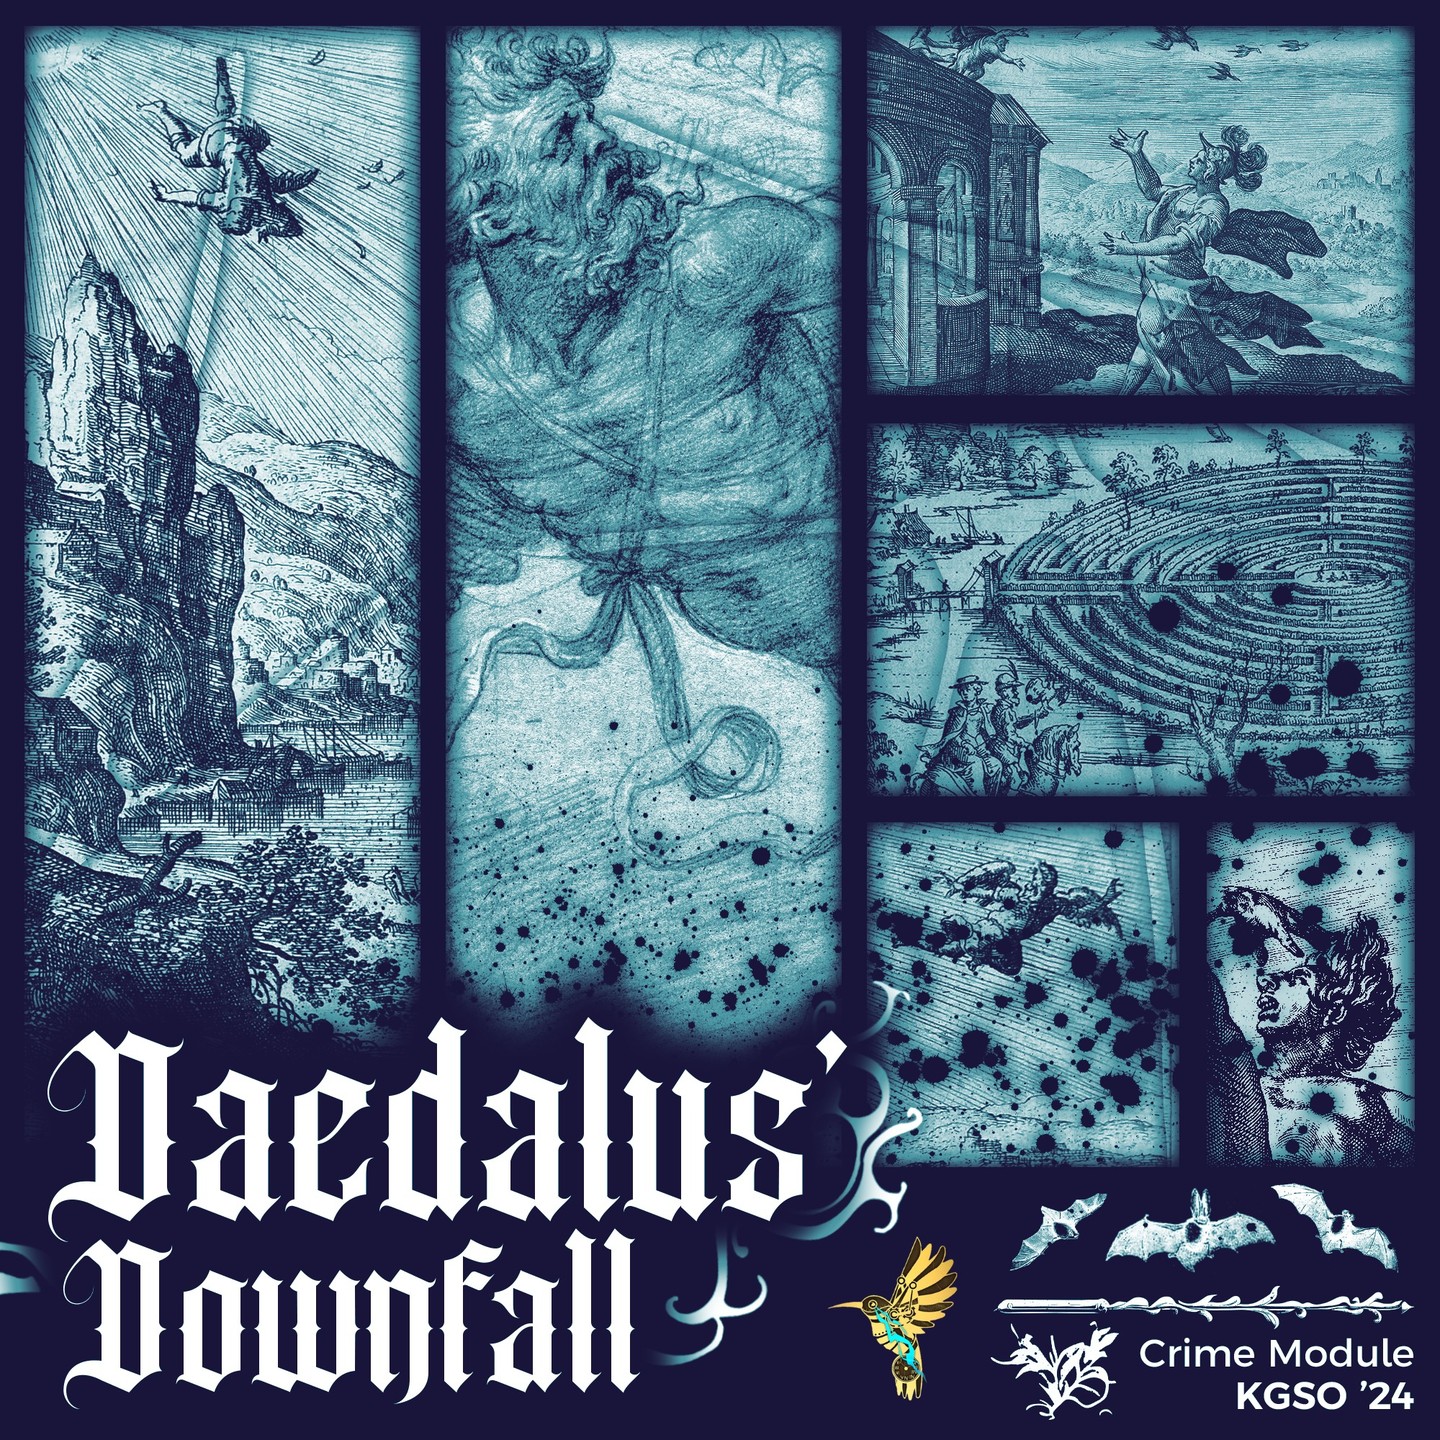 Daedalus' Downfall